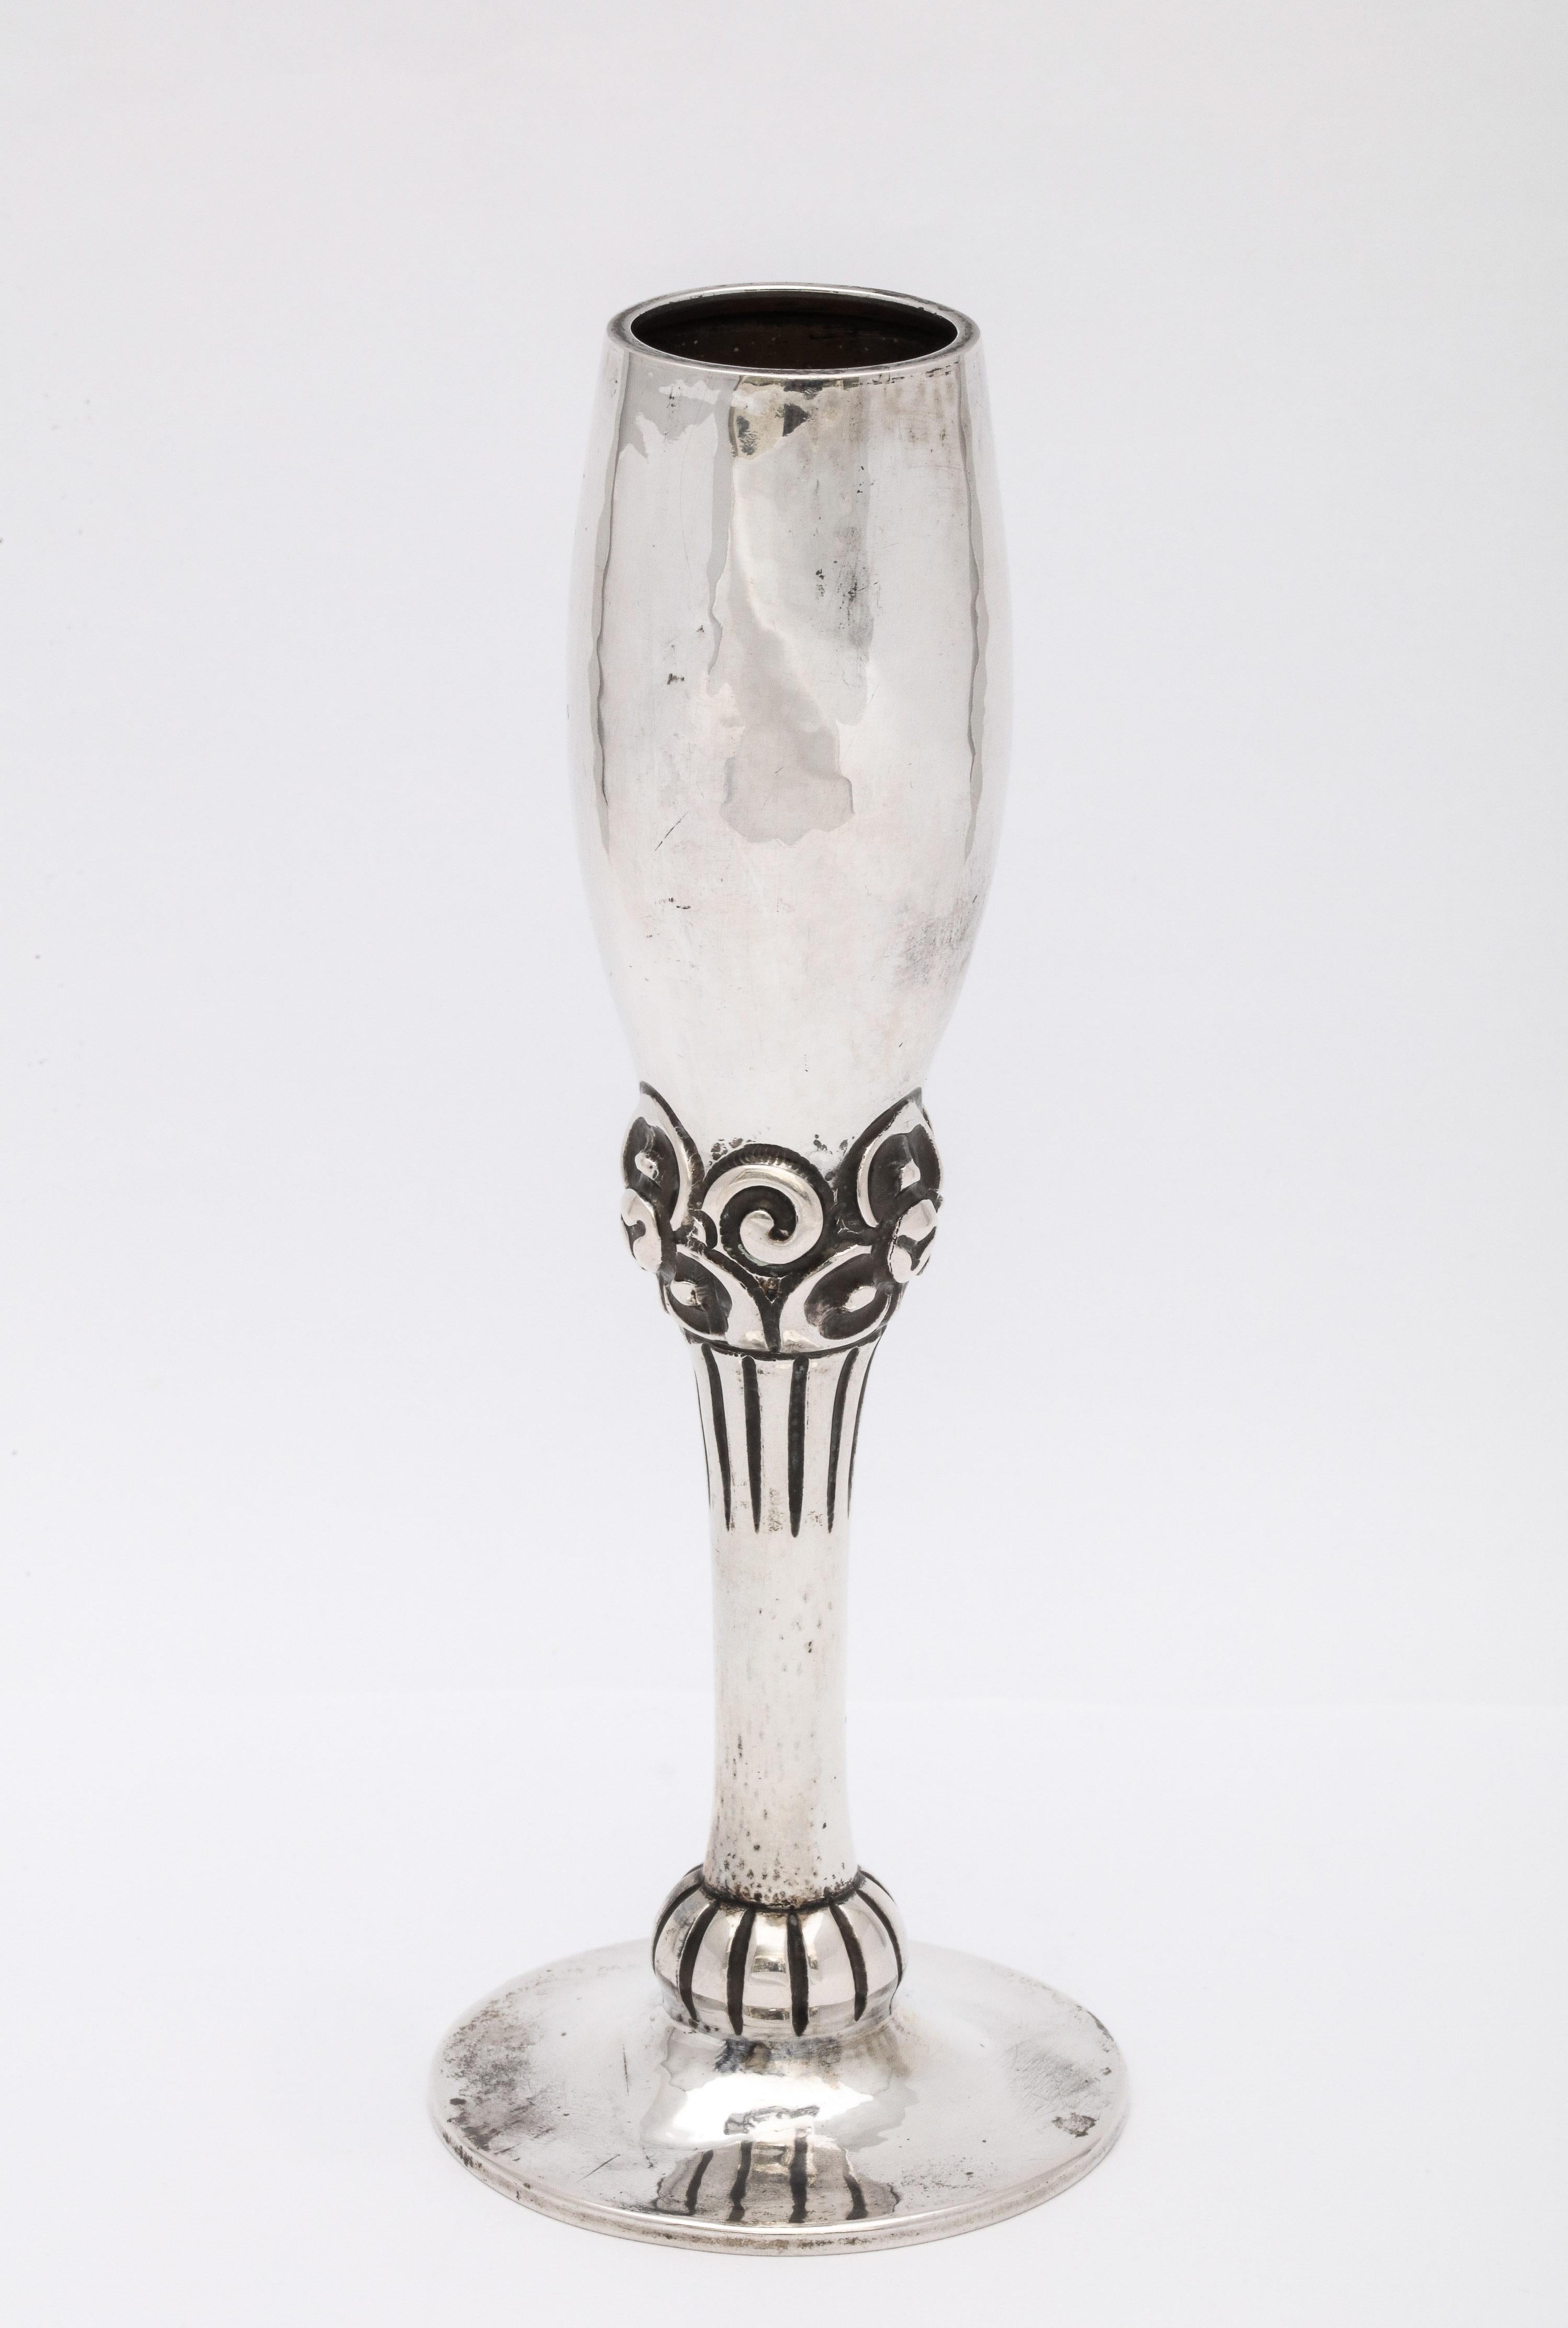 Art déco, vase à bourgeons en argent continental (.830), Bergen, Norvège, vers 1920, Magnus Aase, fabricant. Mesure 6 1/2 pouces de haut x 2 1/2 pouces de diamètre au point le plus large x 1 1/4 pouces de diamètre à travers l'ouverture. La partie